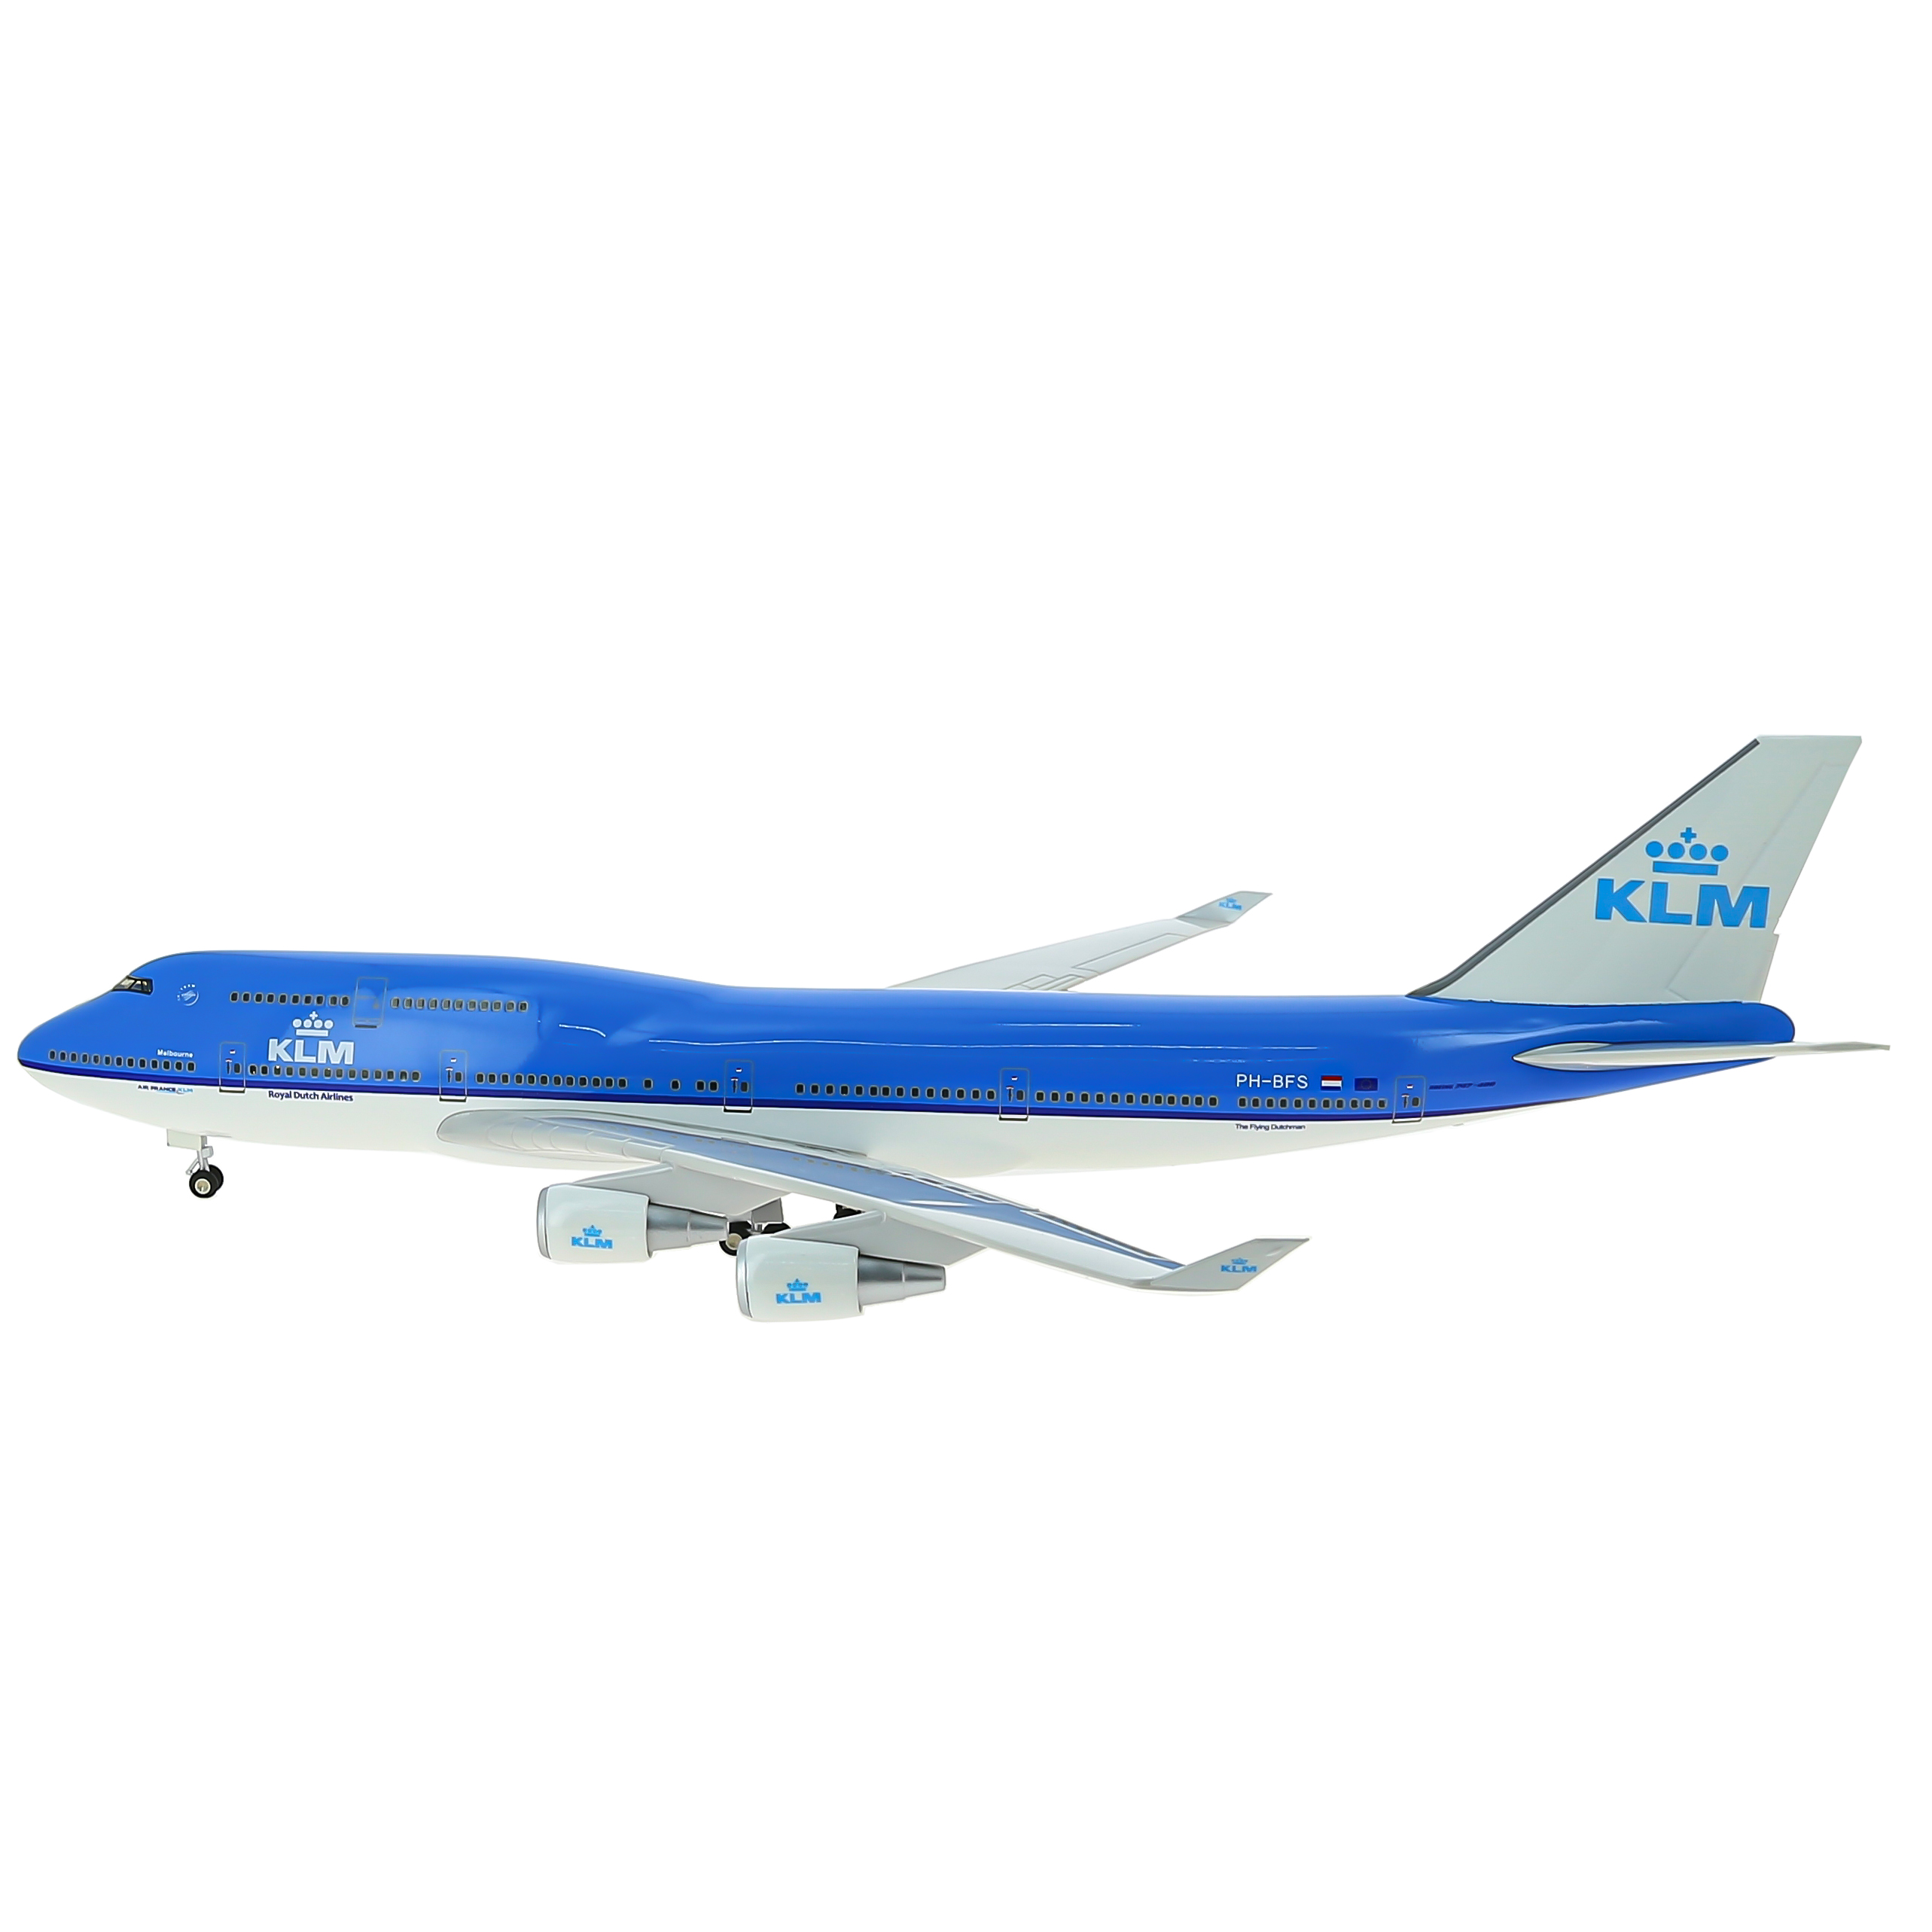     747  KLM,   .  47 . # 6 hobbyplus.ru